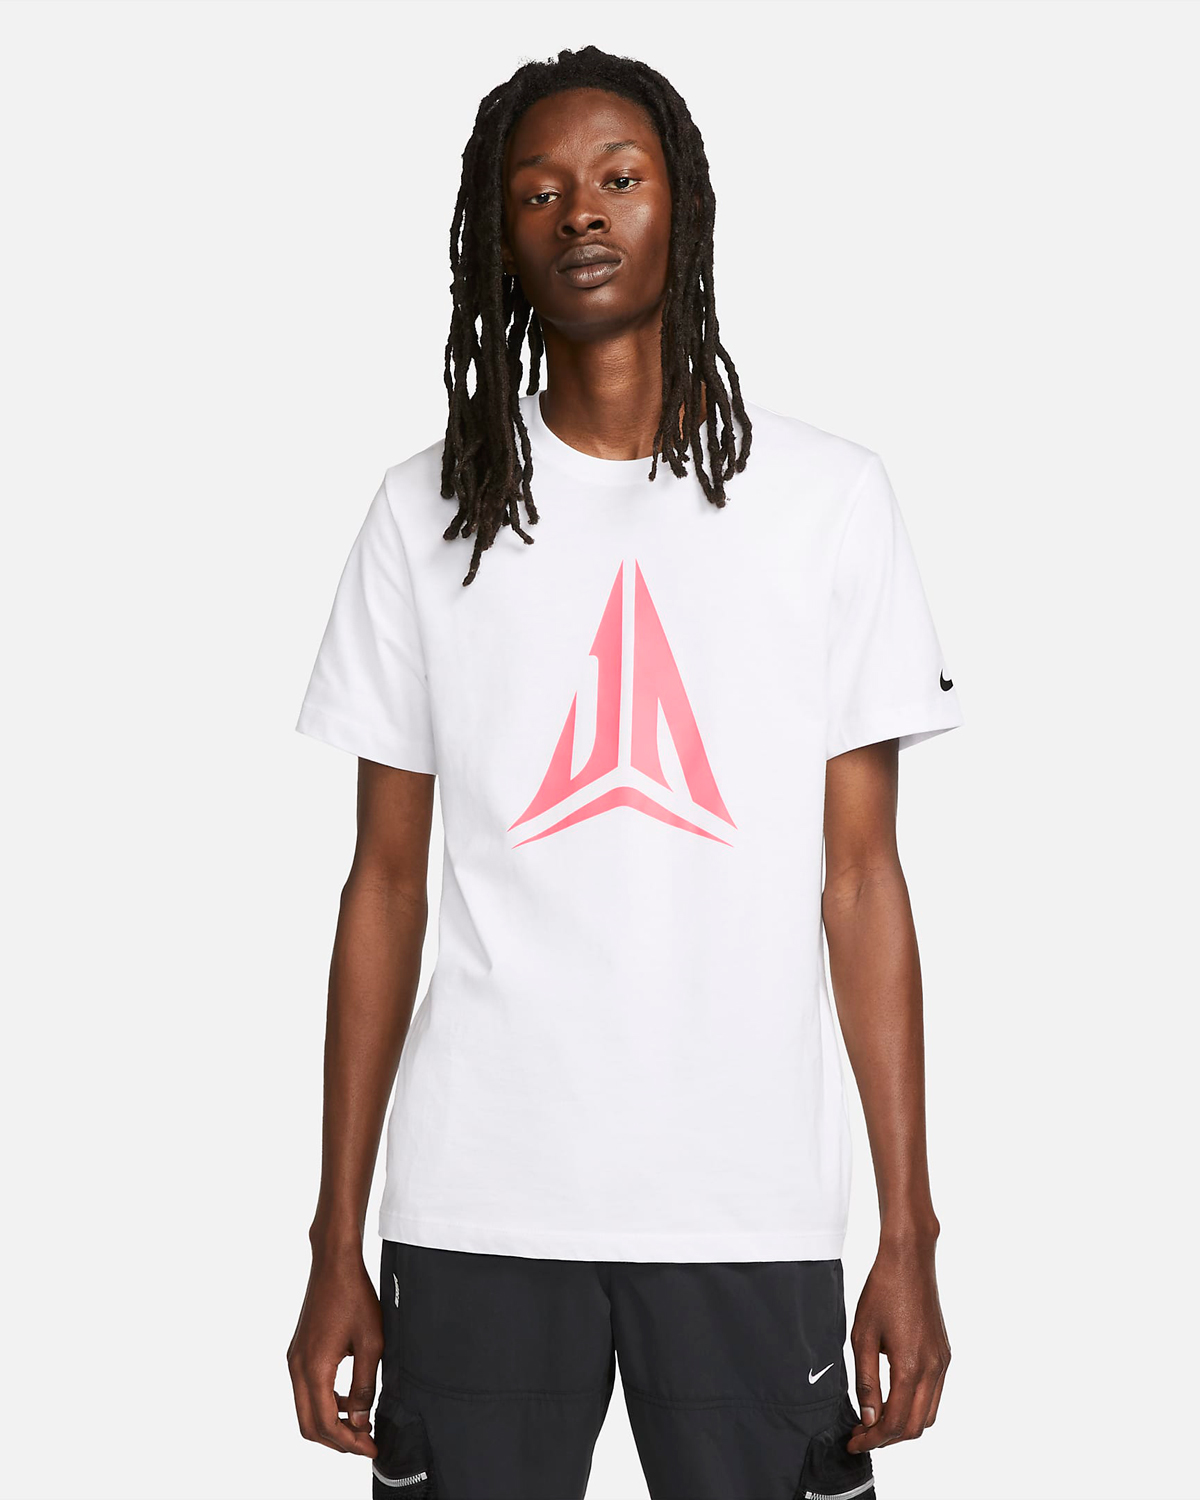 Nike-Ja-1-T-Shirt-White-Pink